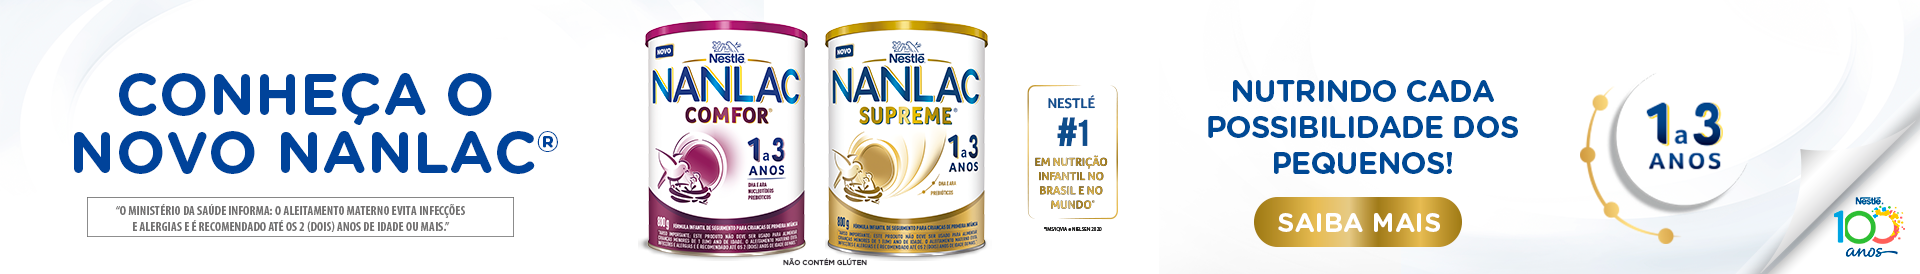 Novo Nanlac - 17/05 a 31/05